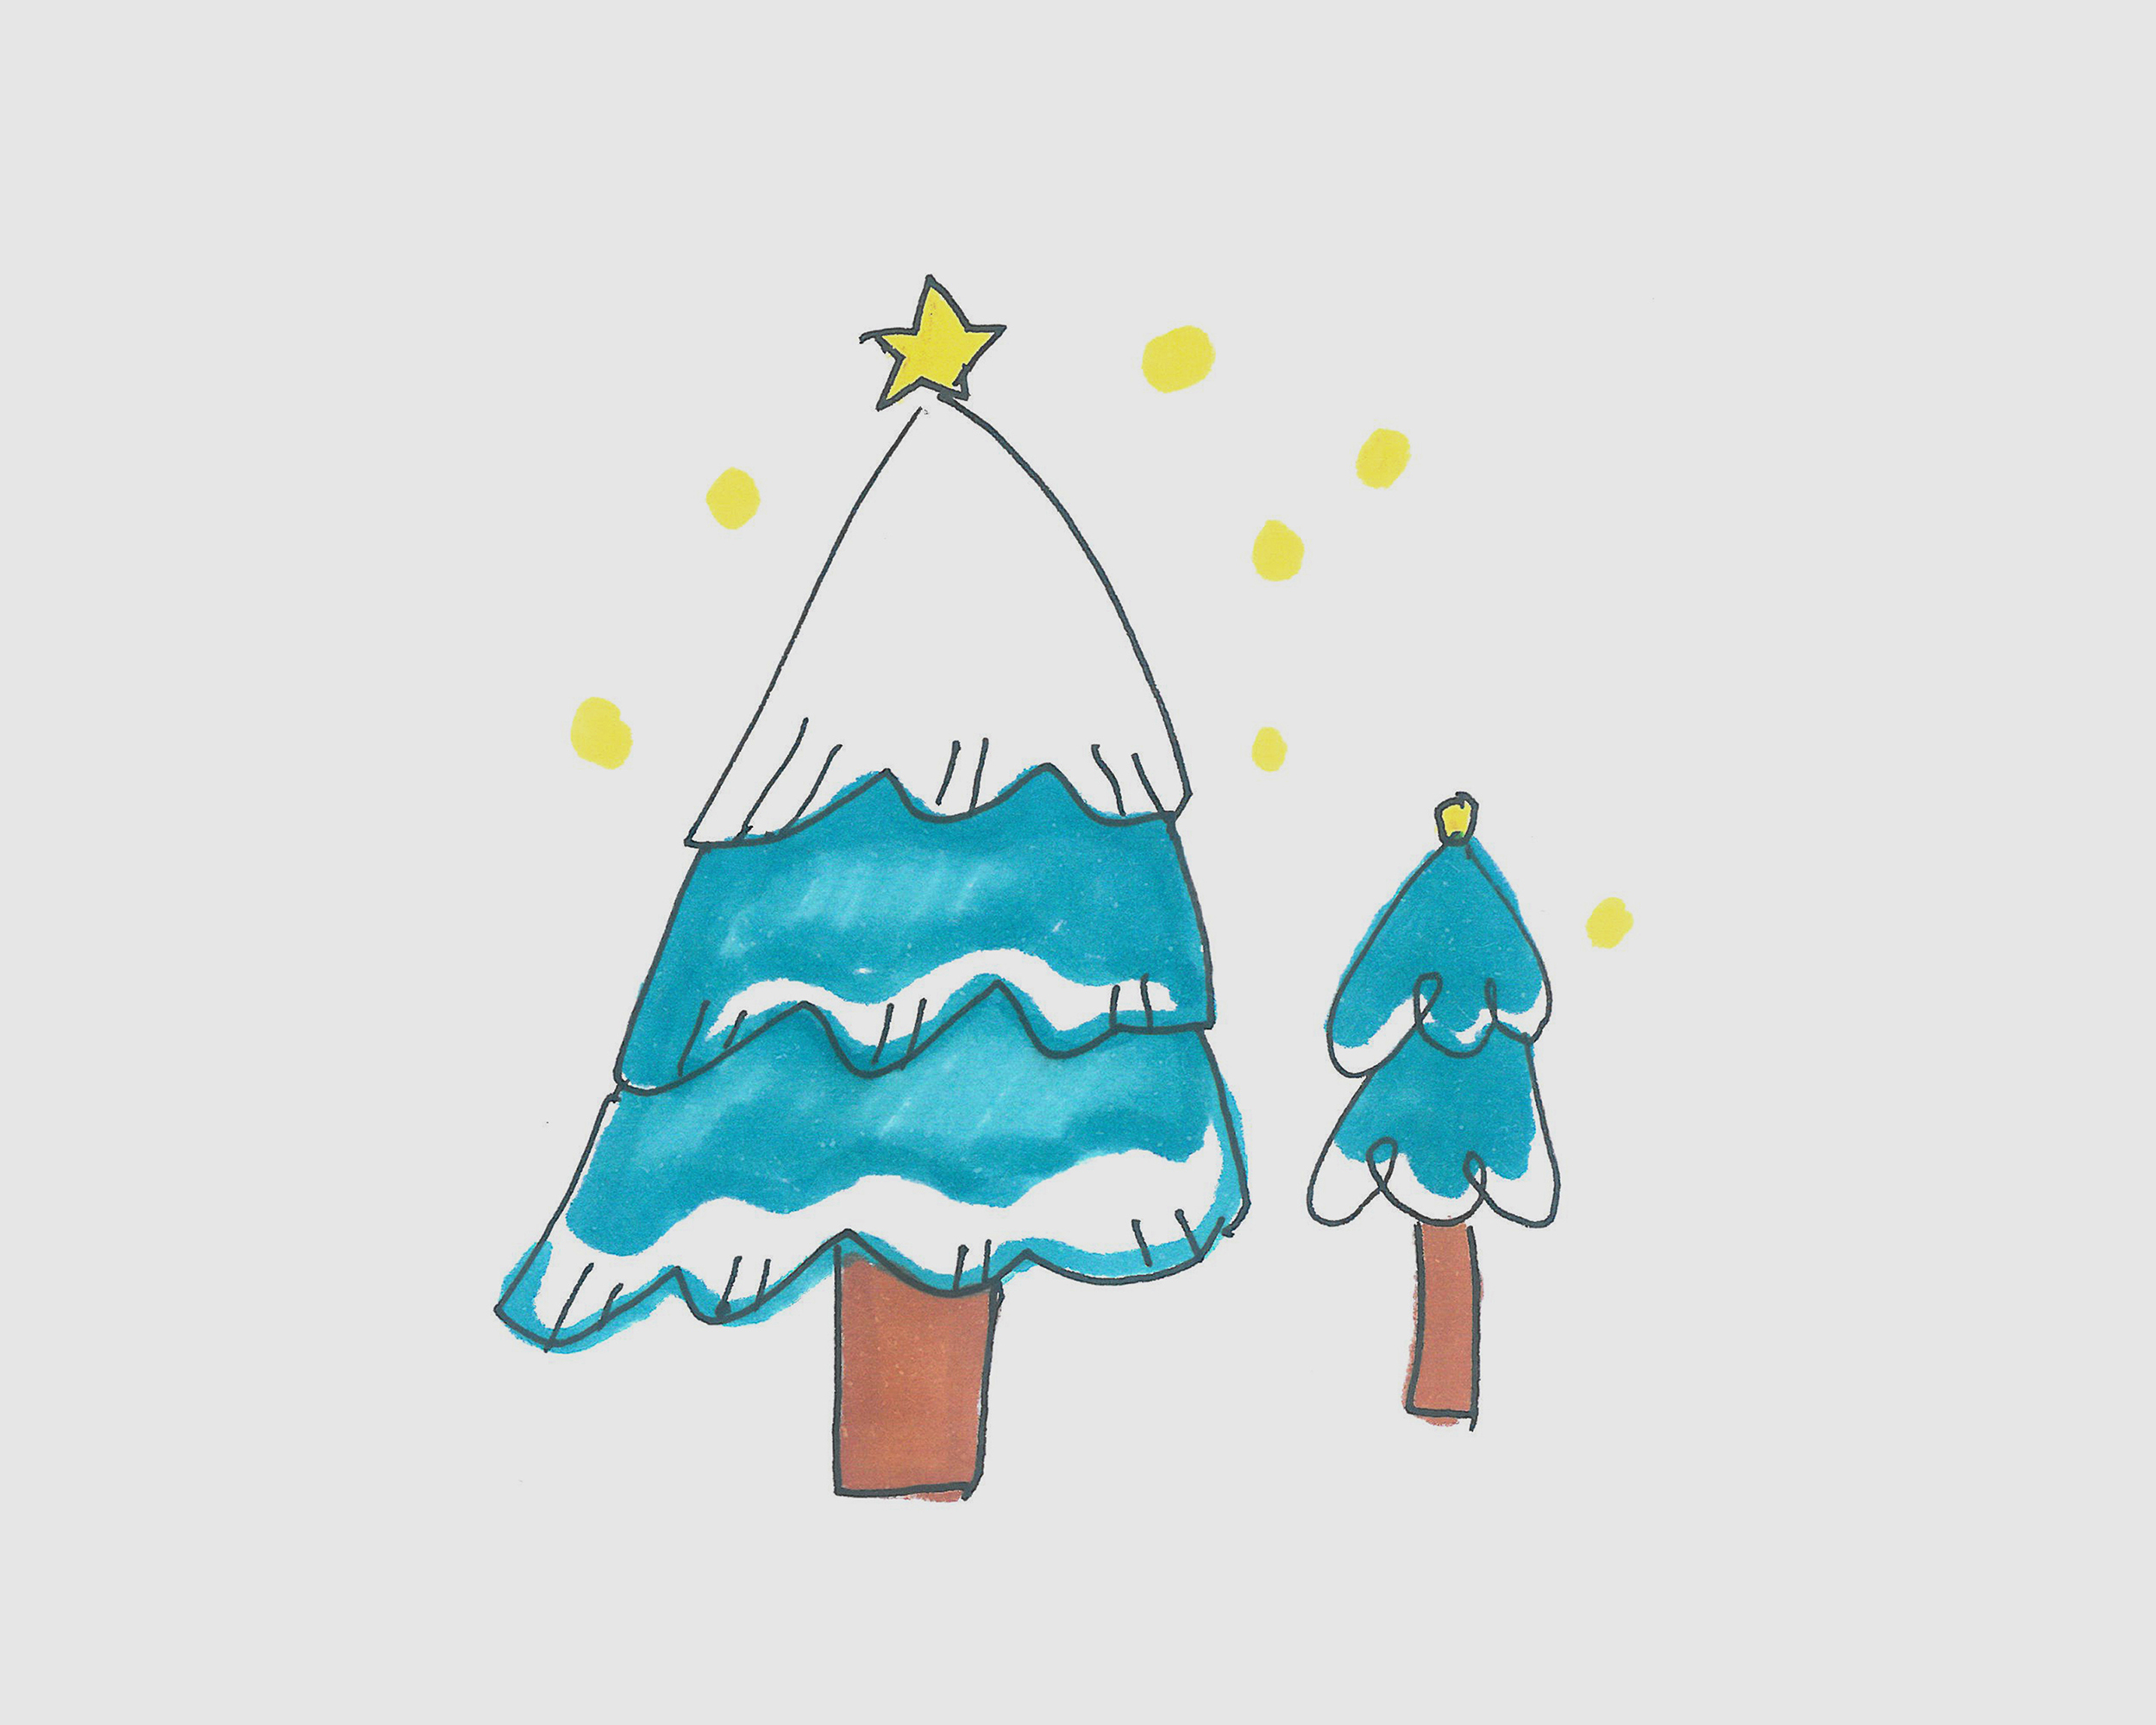 简笔画圣诞树 - 堆糖，美图壁纸兴趣社区